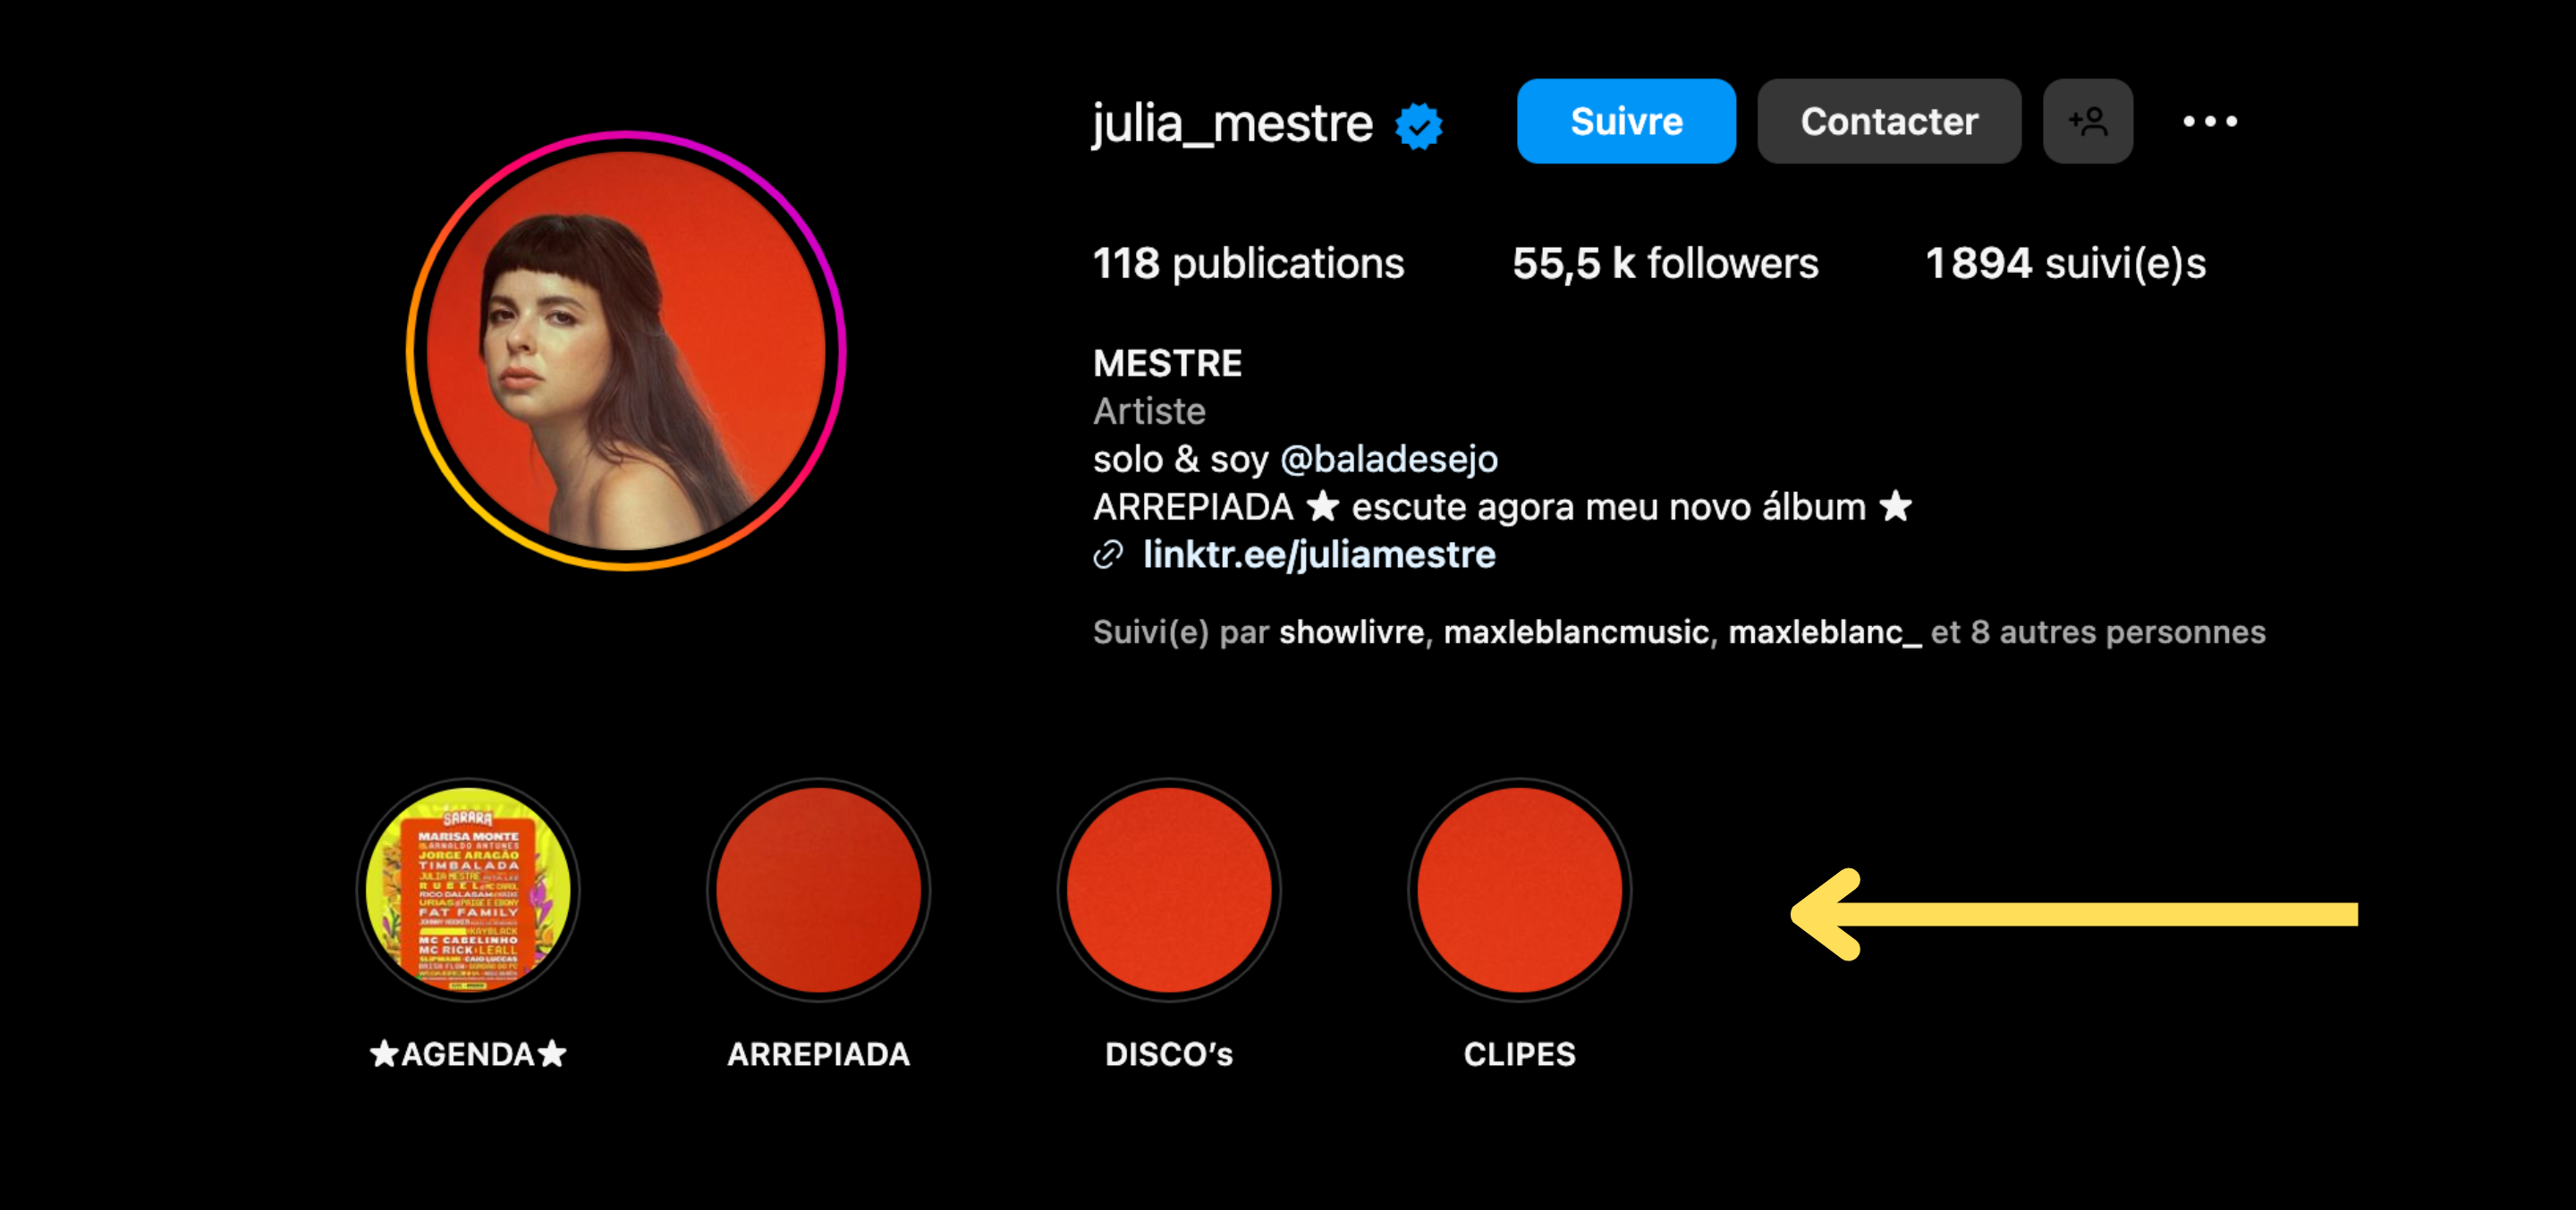 Criar destaques no seu Instagram é essencial para cativar a atenção dos seus seguidores - Instagram da artista carioca Julia Mestre